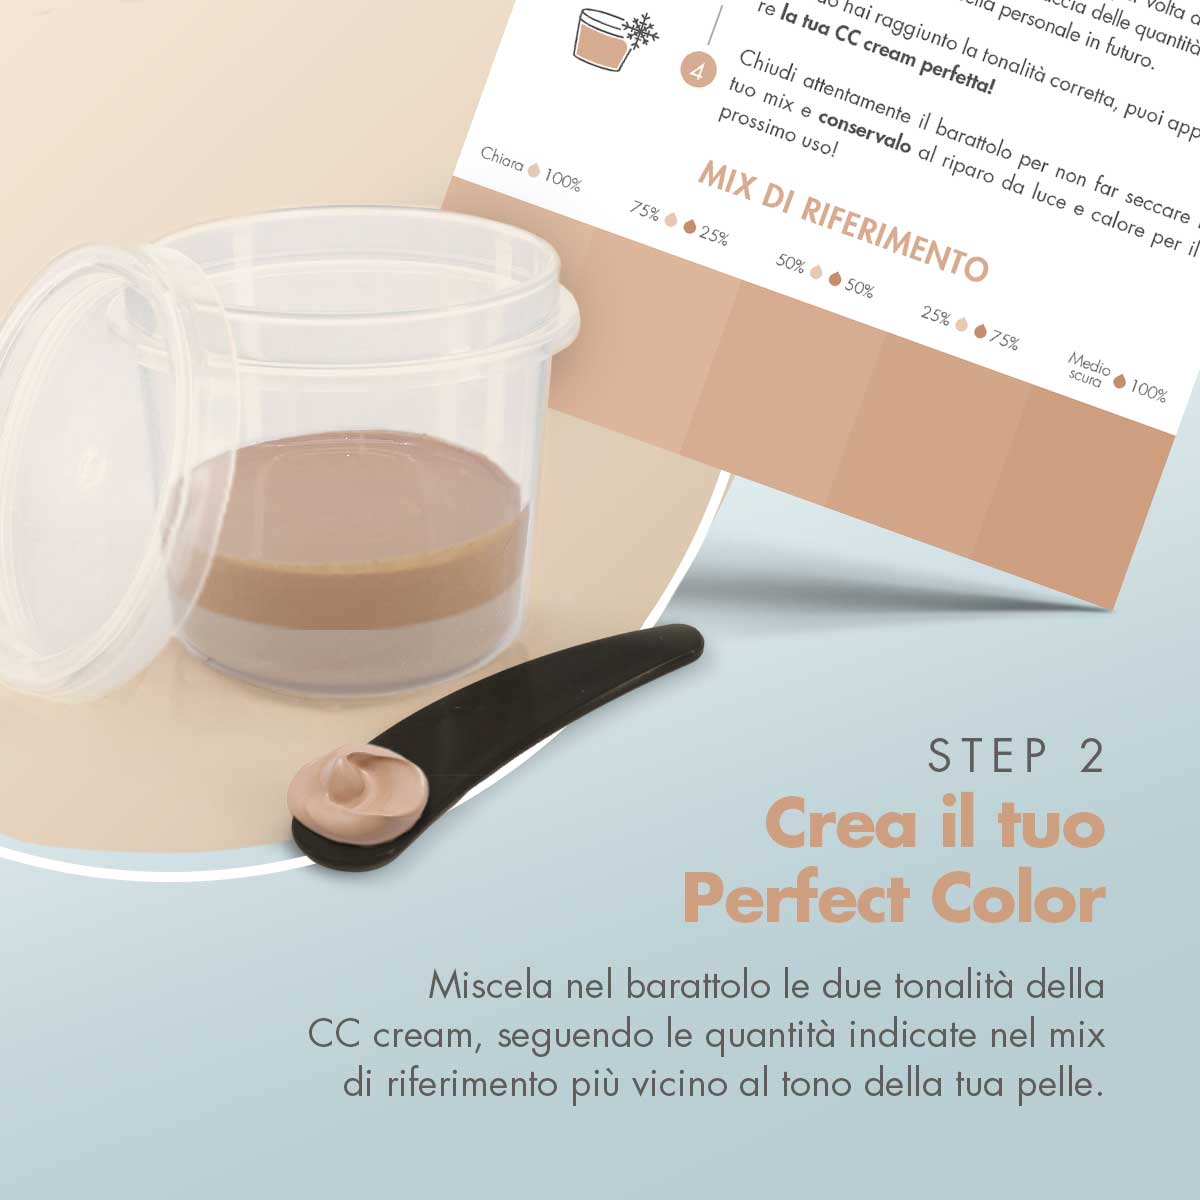 CC cream chiara + Box perfect color